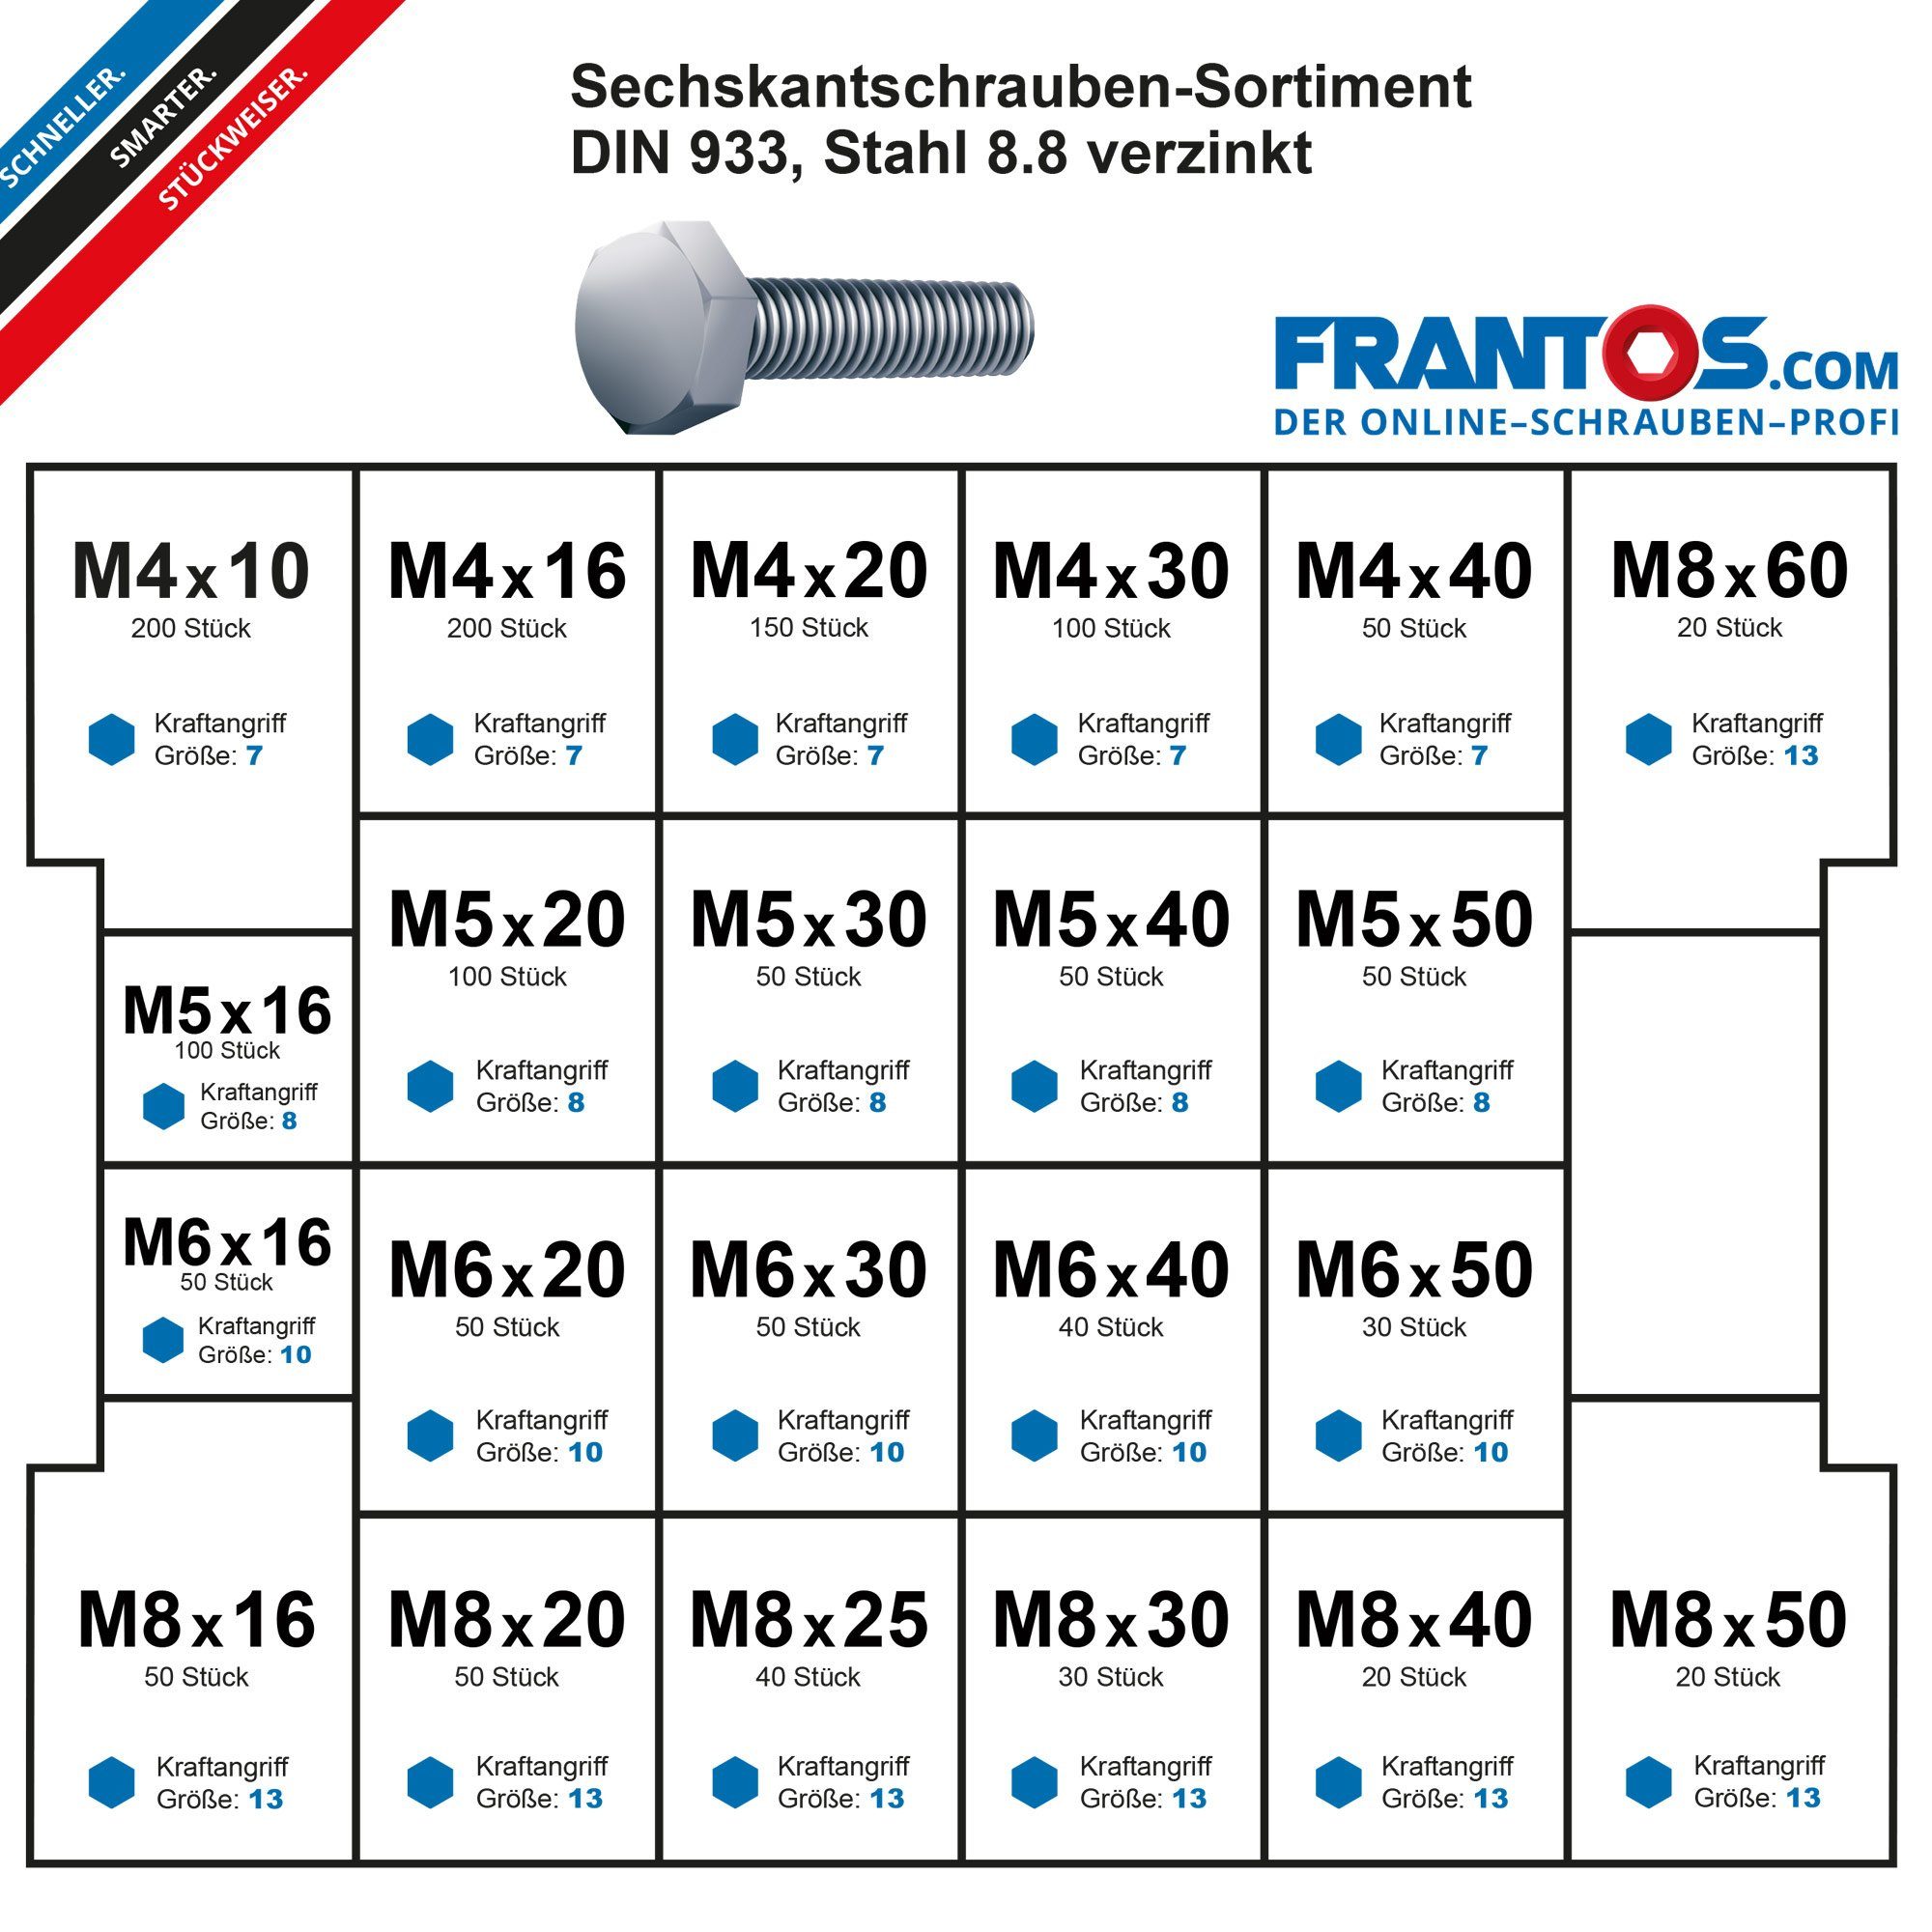 Schrauben-Set DIN FRANTOS Schraubensortiment A2 tlg. / Sechskantschrauben in verzinkt), 933 (Edelstahl 8.8 L-Boxx Stahl Montagekoffer, 1500